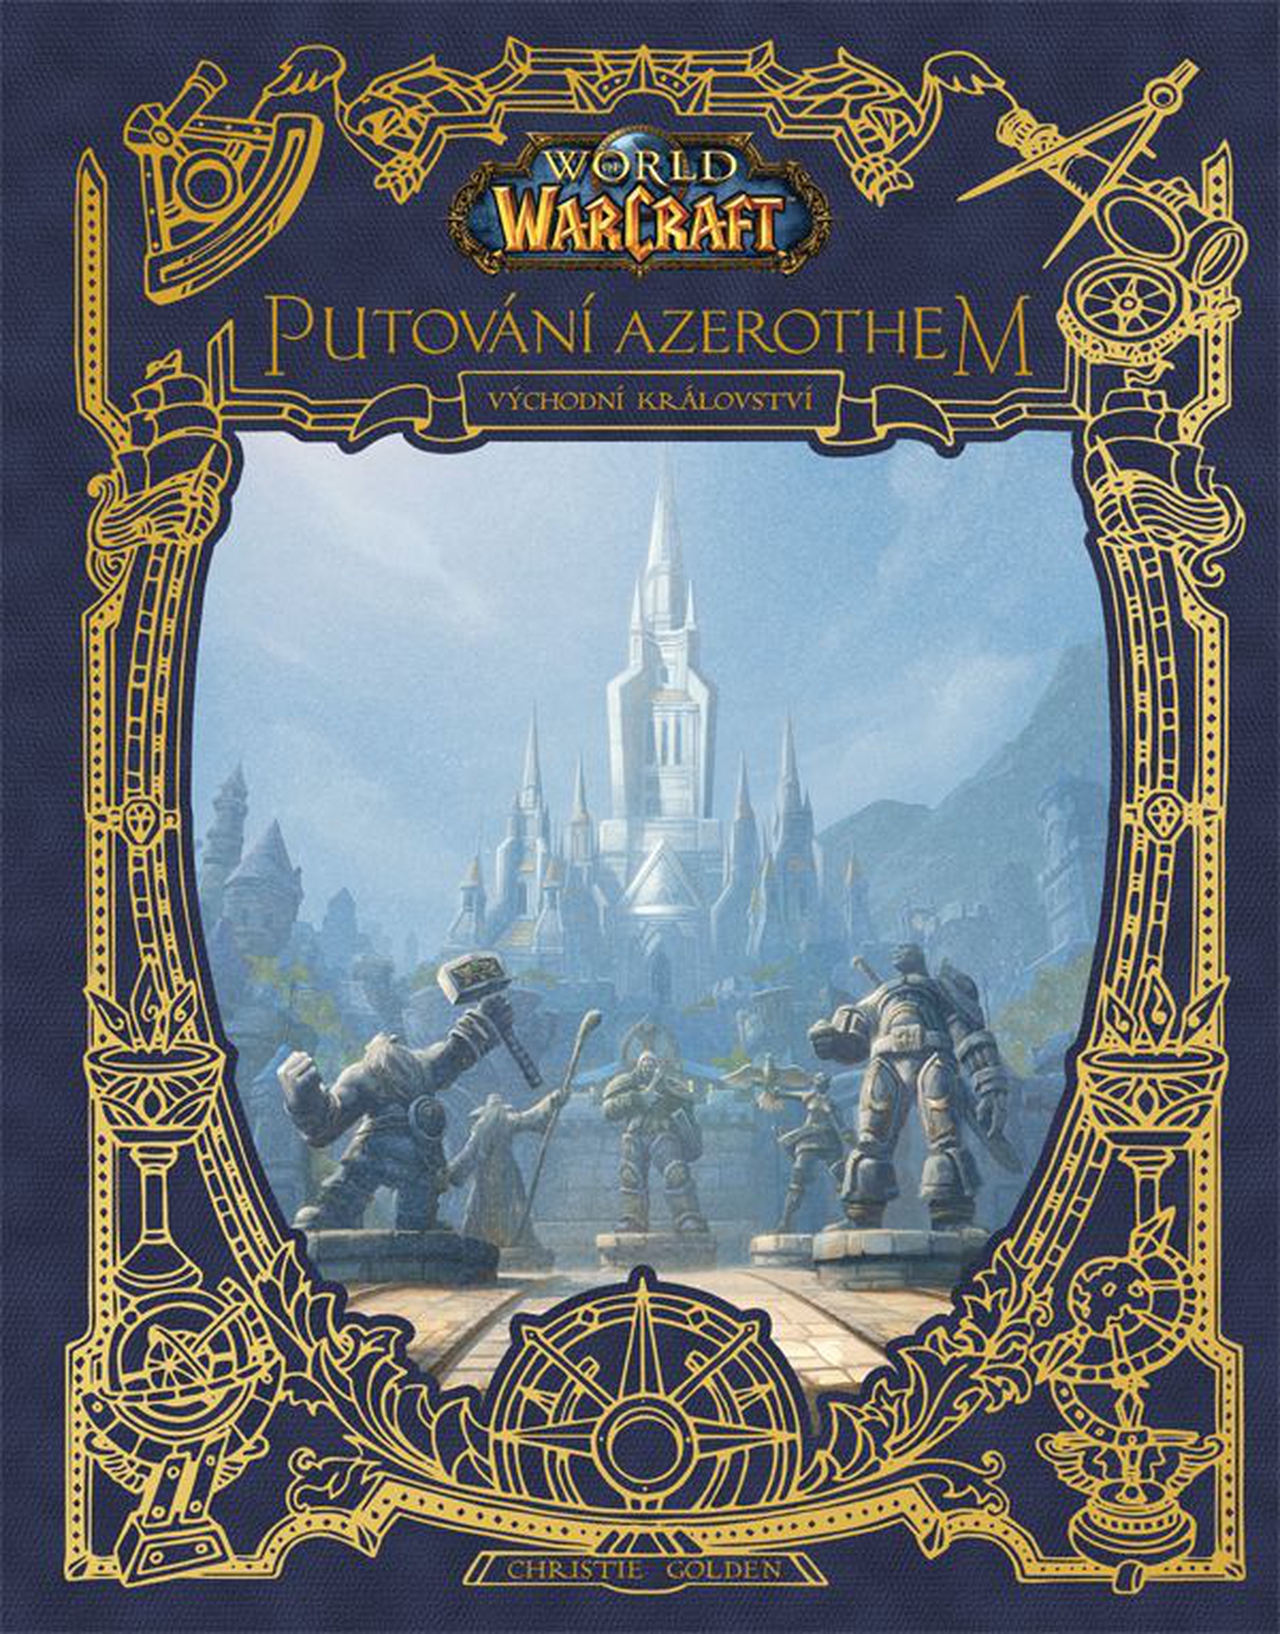 World of Warcraft: Putování Azerothem 1 - Východní království [Golden Christie]